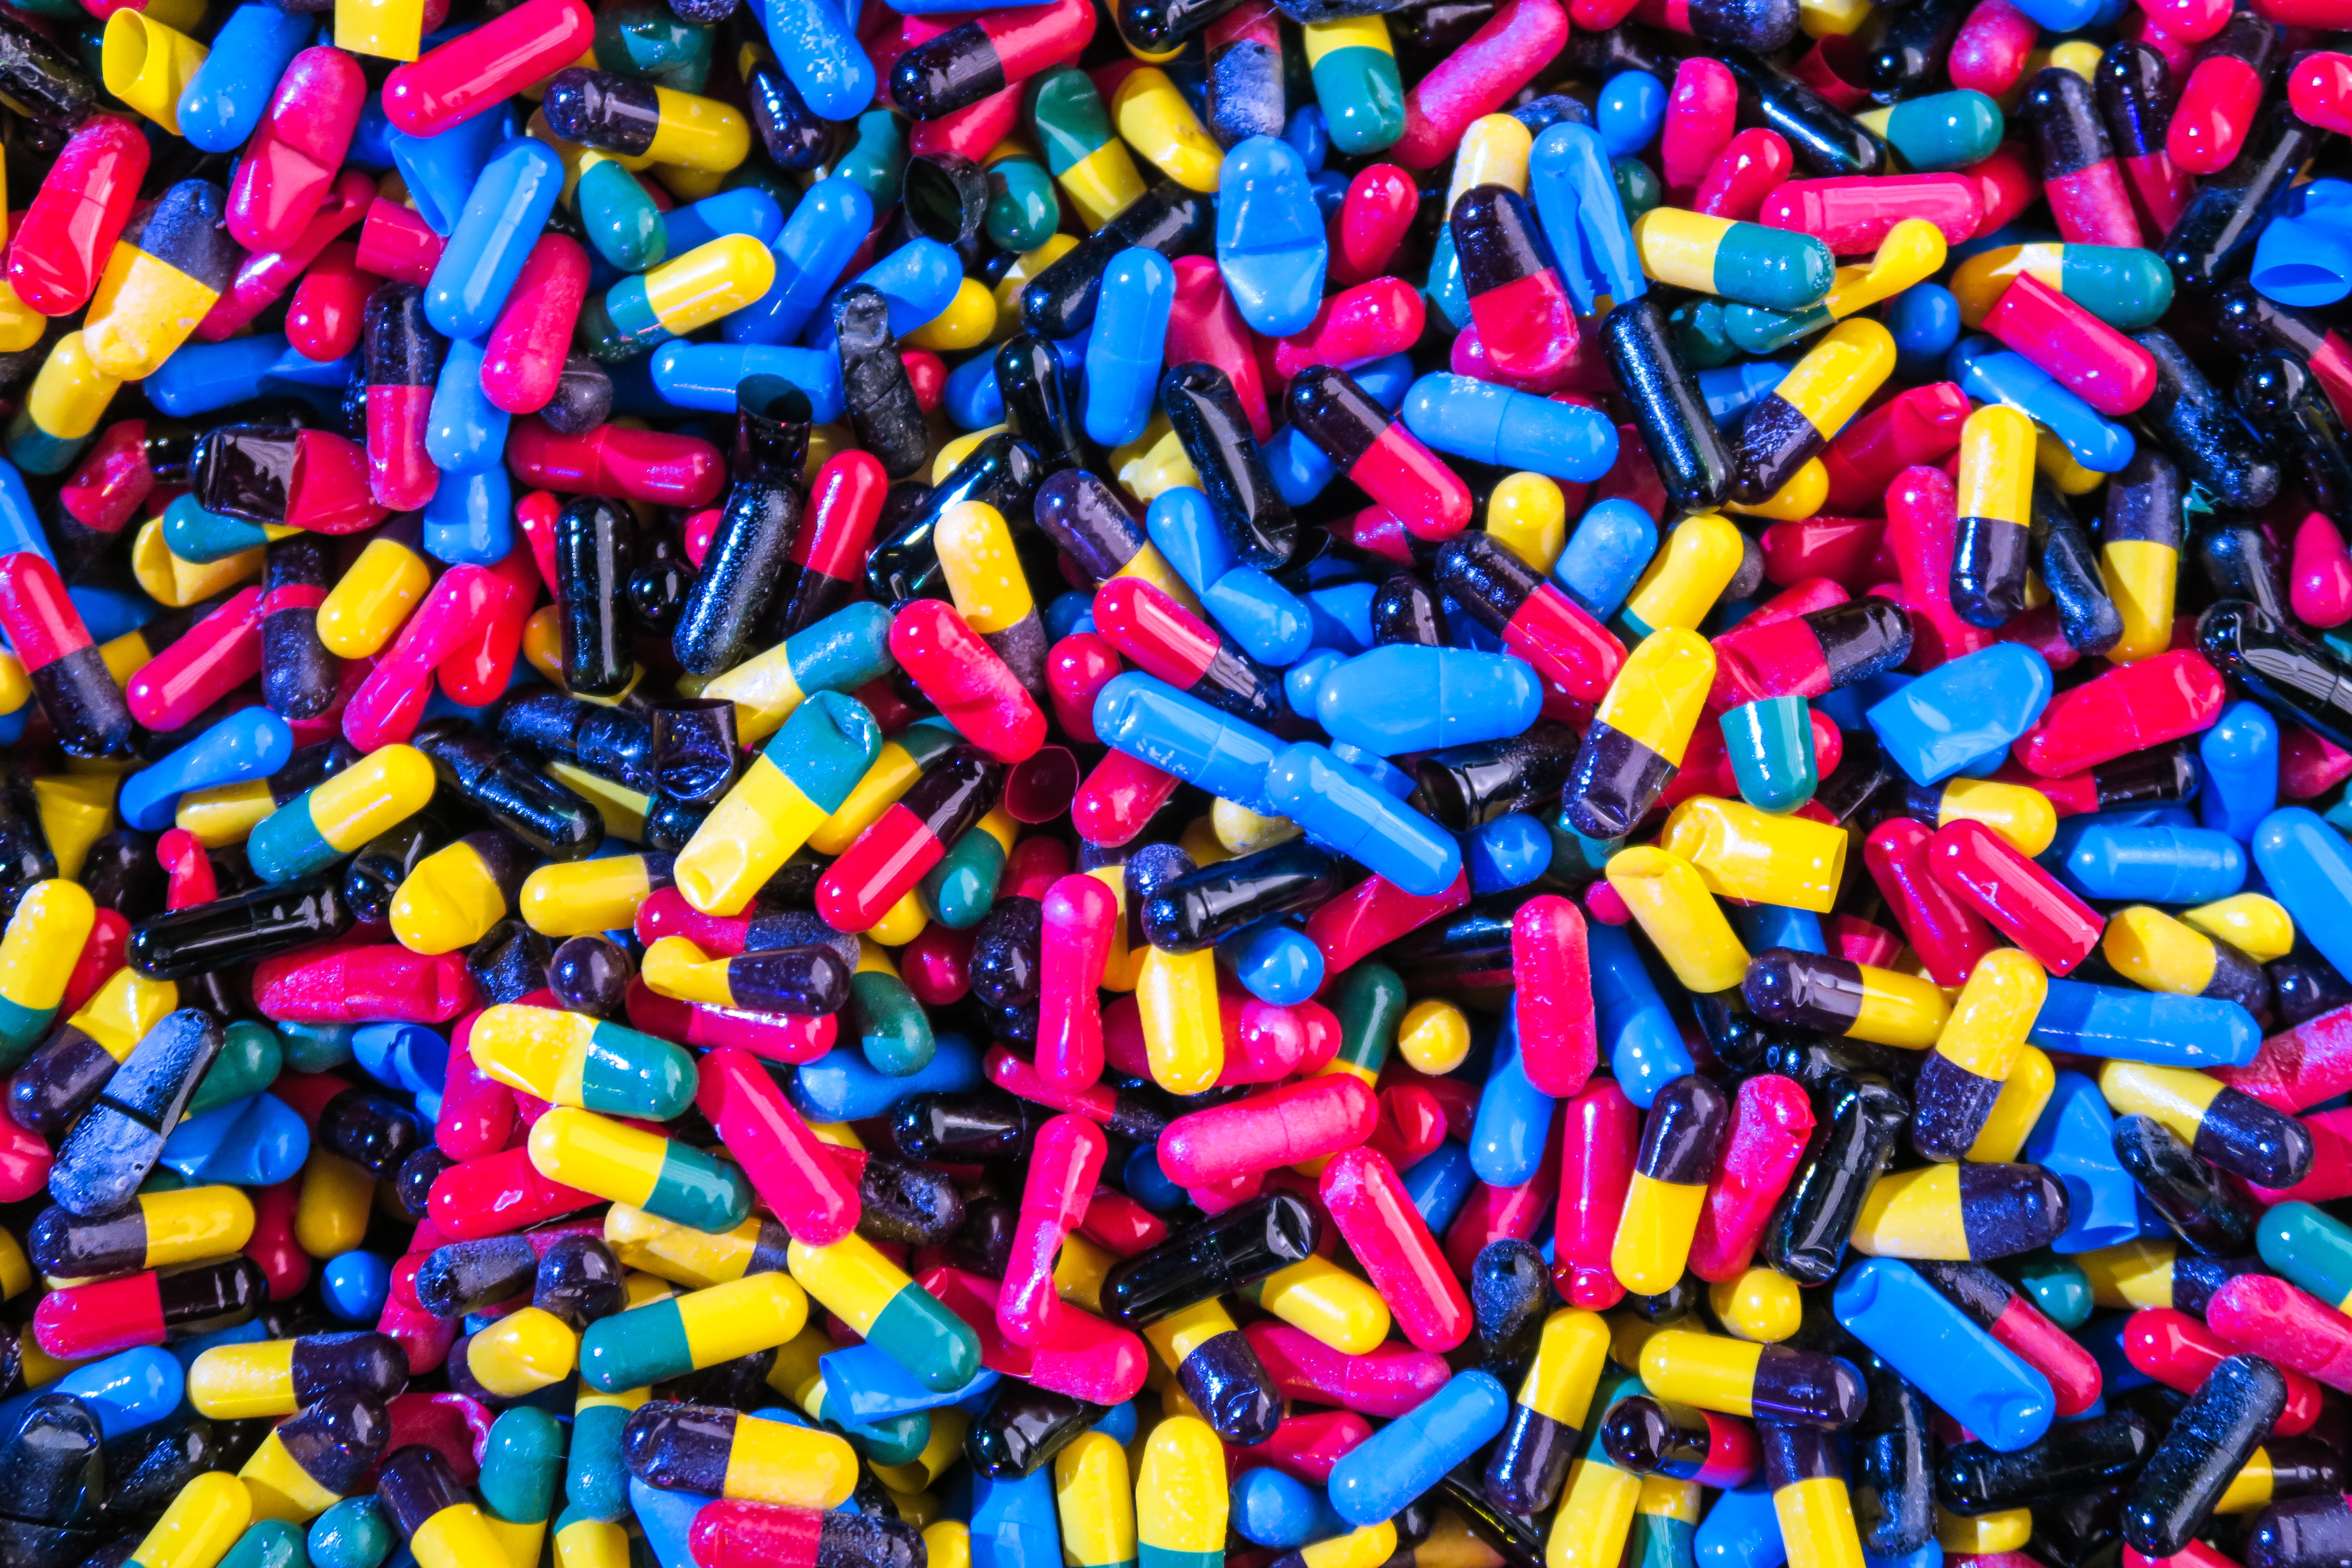  Repense BandNews – o perigo do uso indiscriminado dos antibióticos